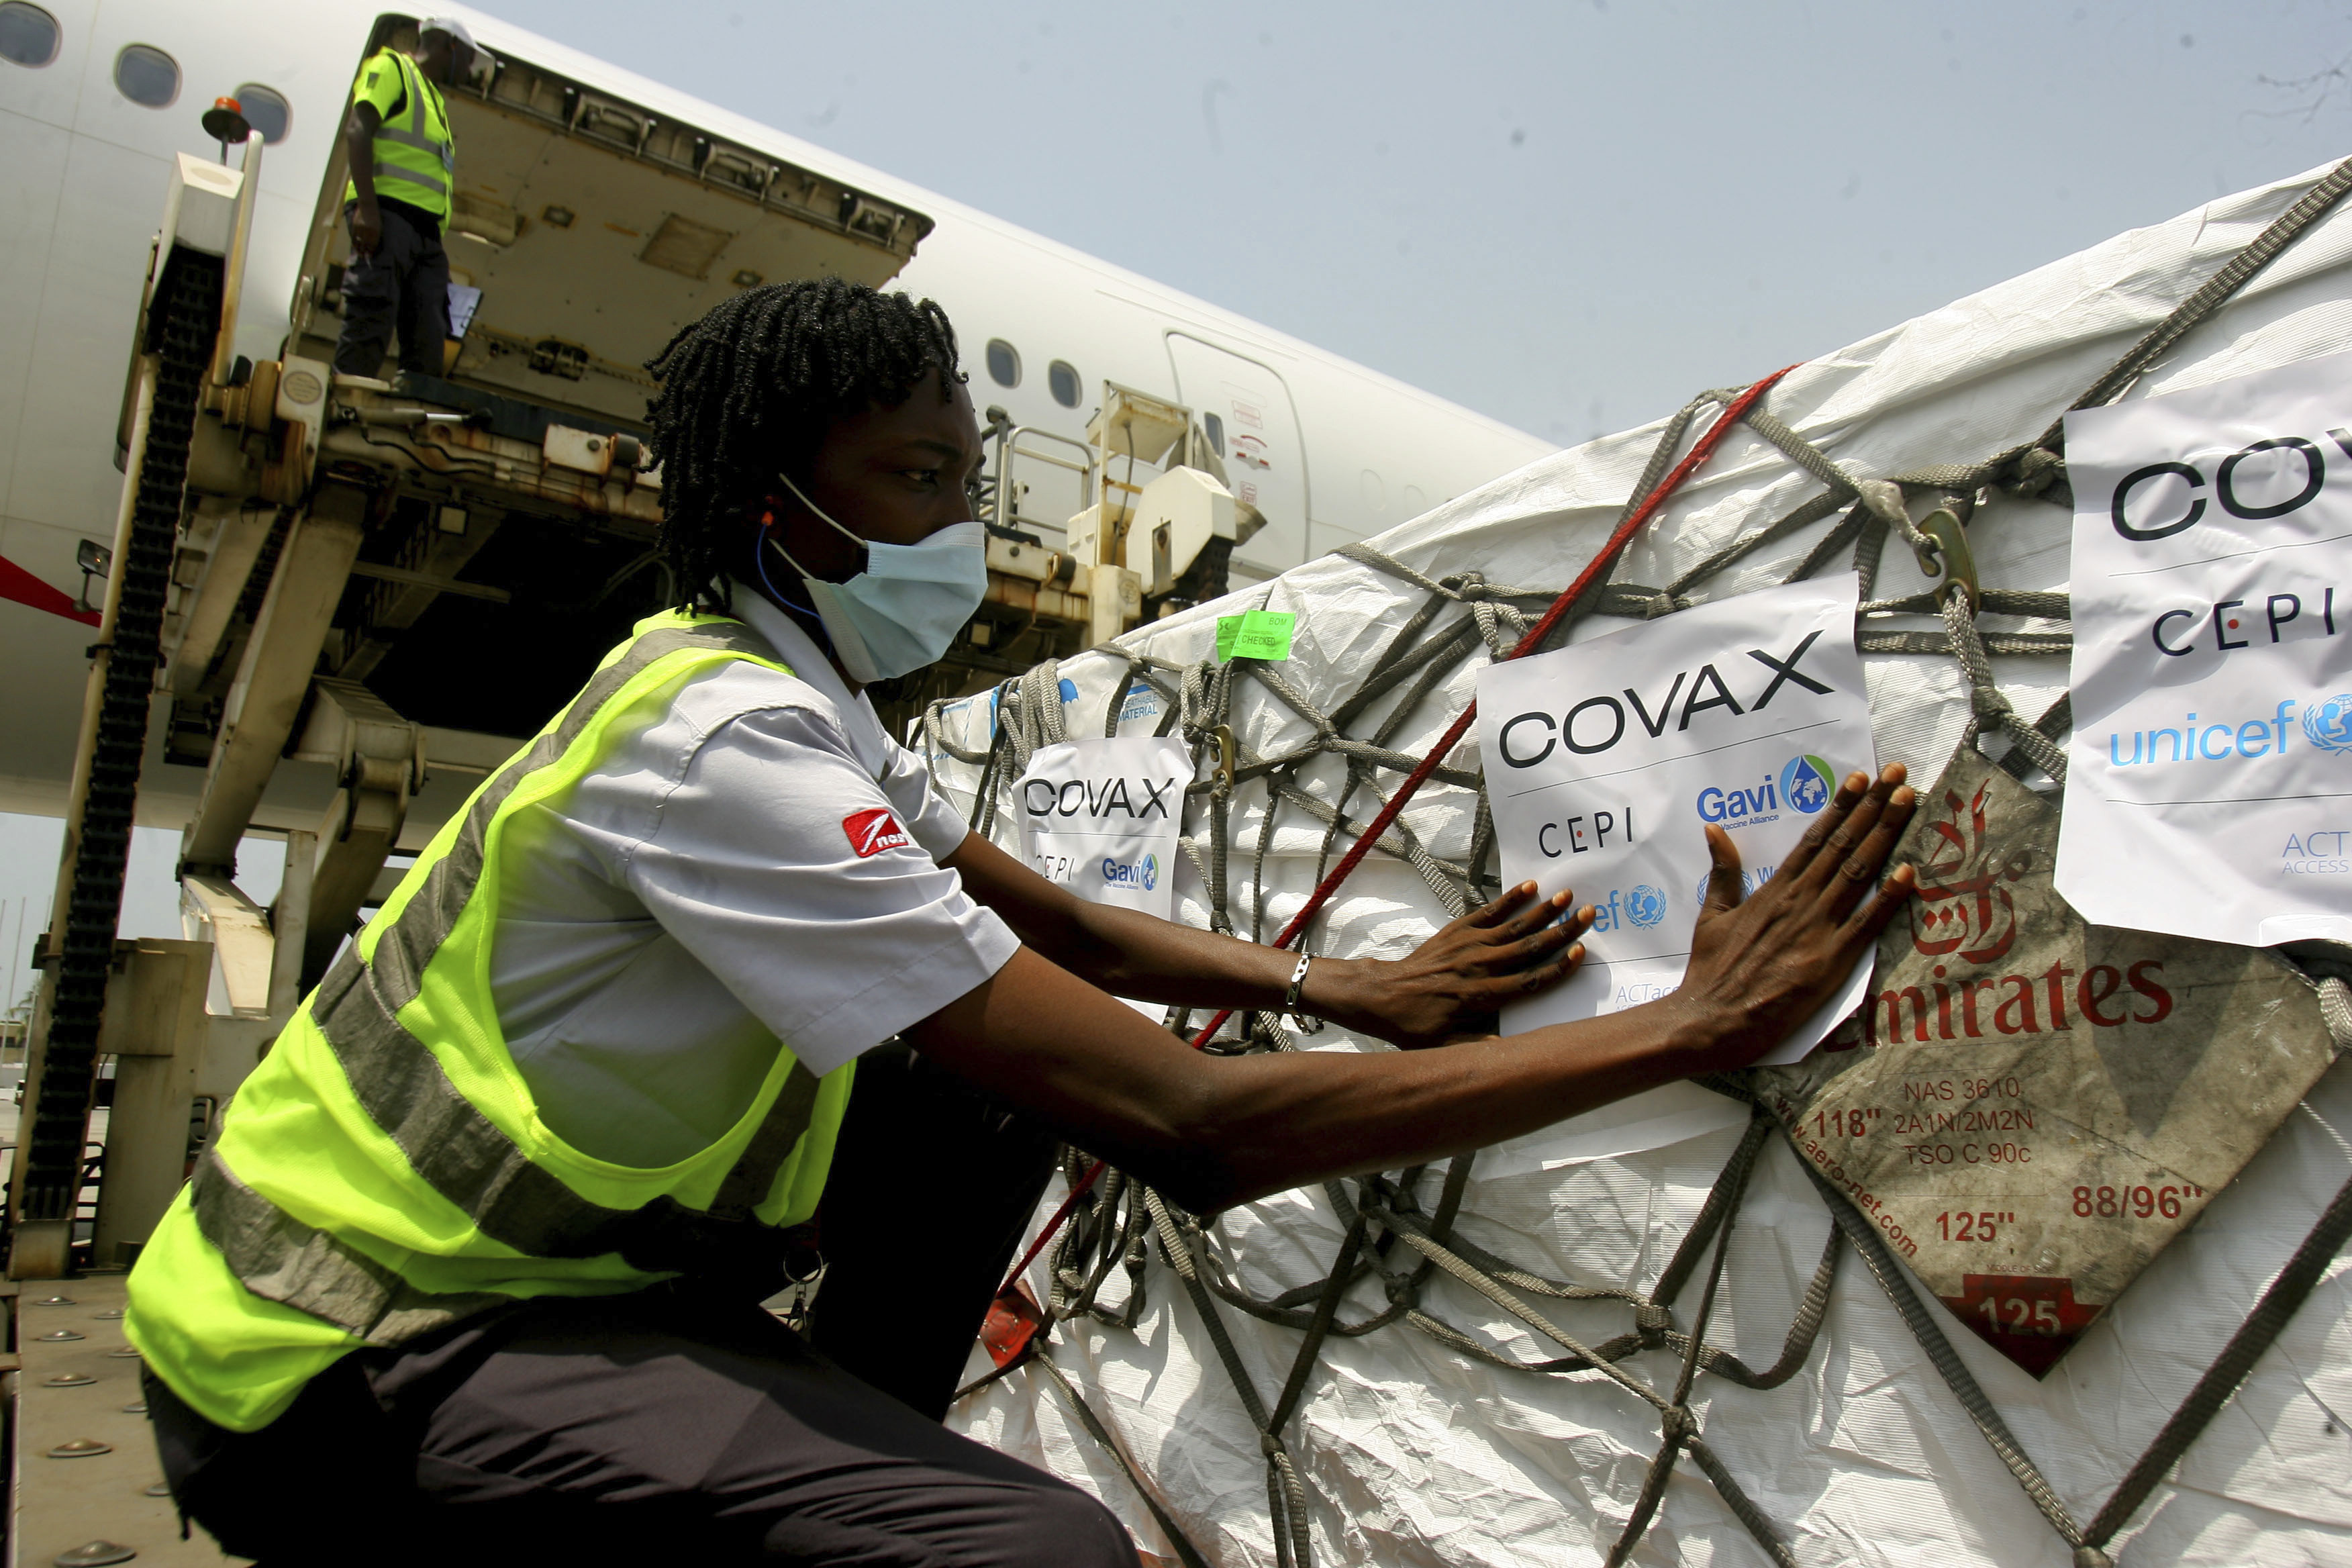 Koronavaksiner distribuert av Covax ankom Elfenbenkysten i februar i år.